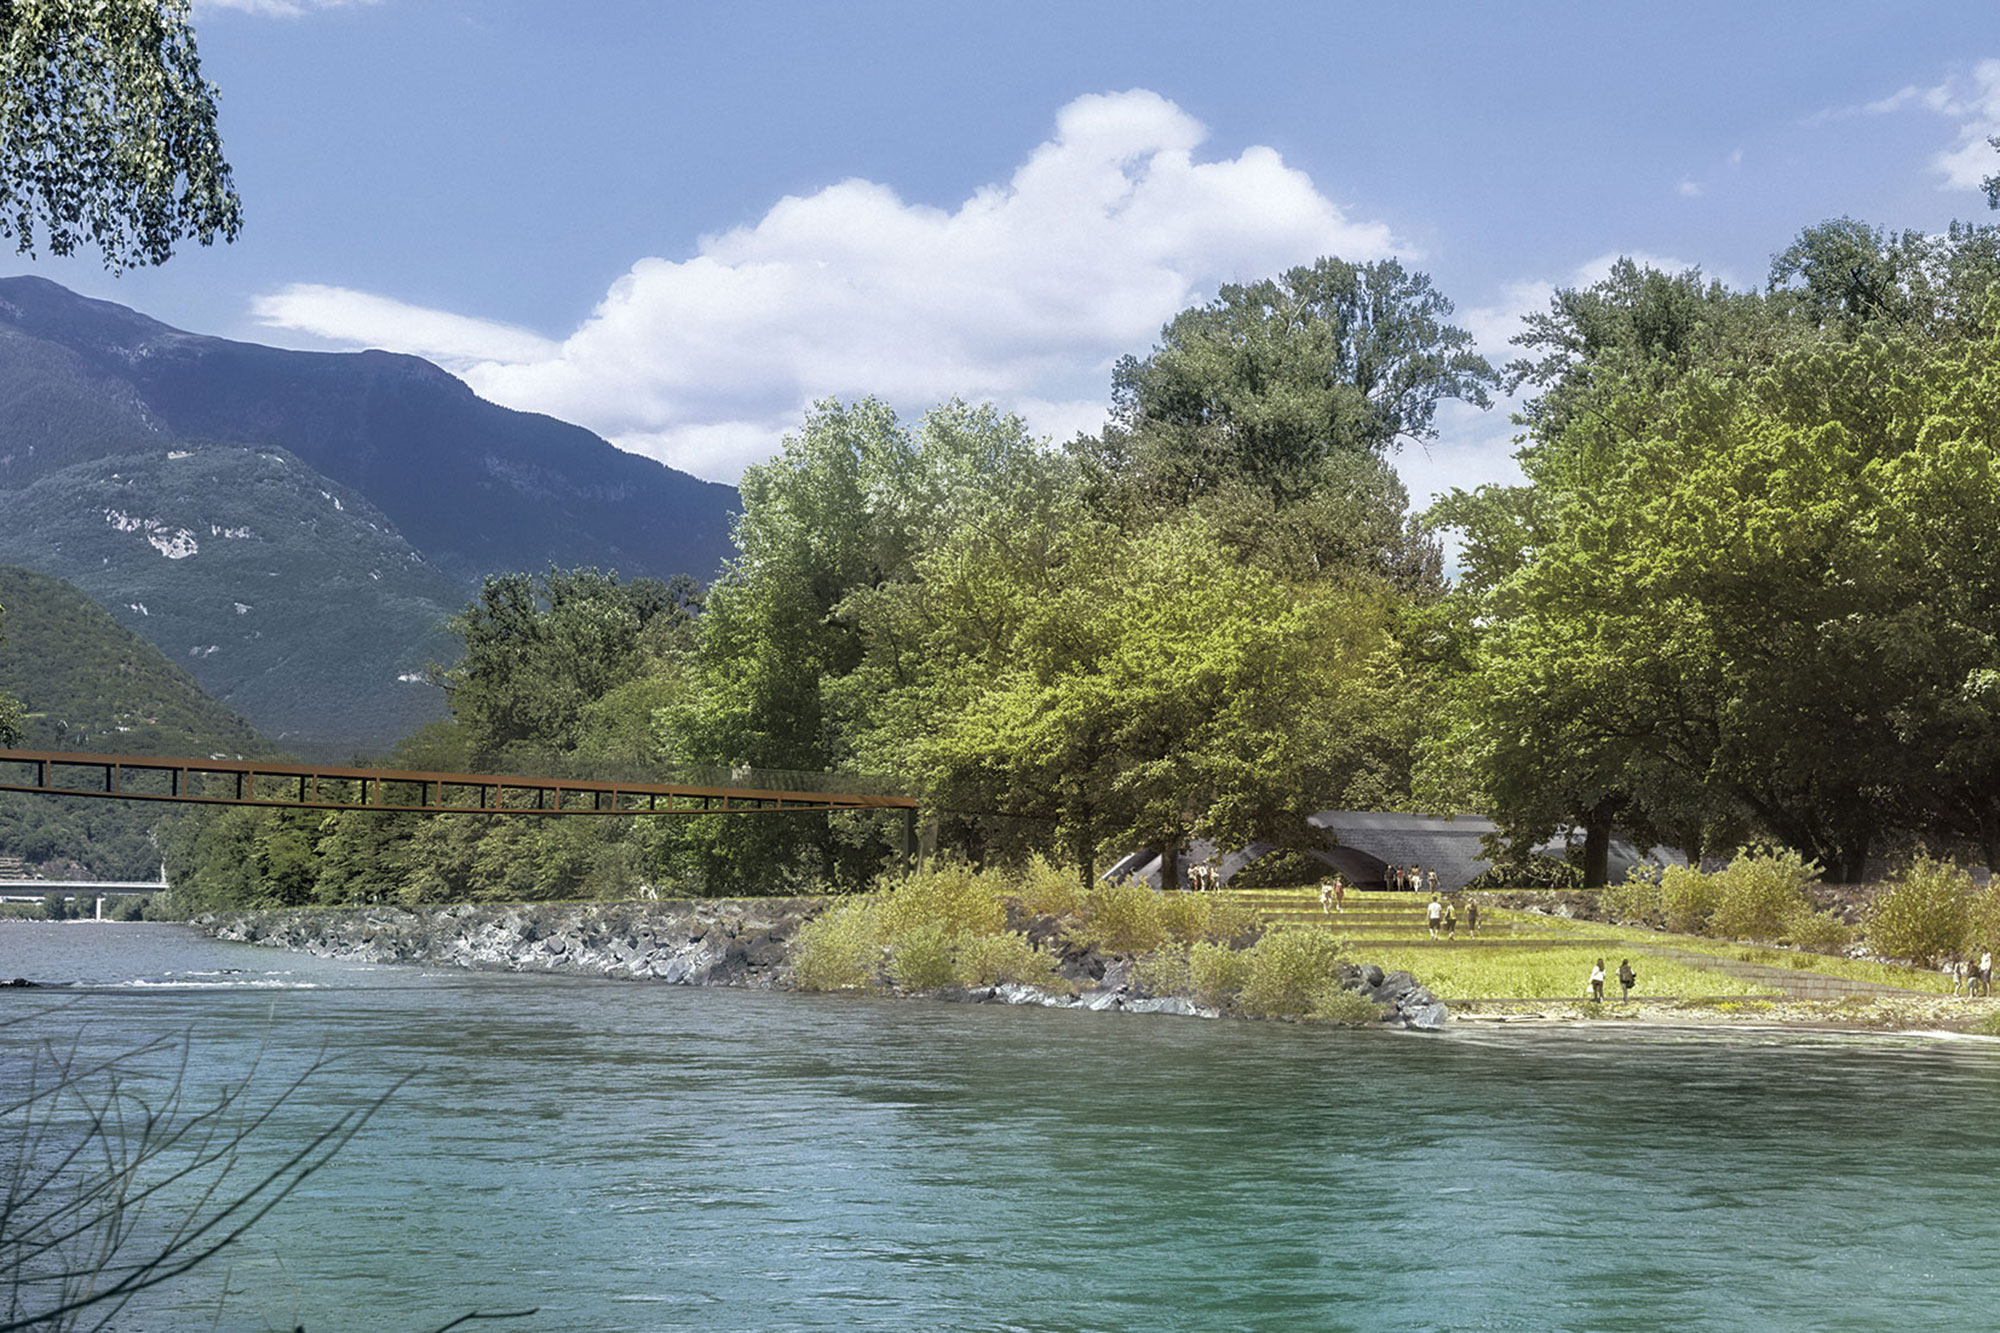 Parco fluviale Saleggi-Boschetti